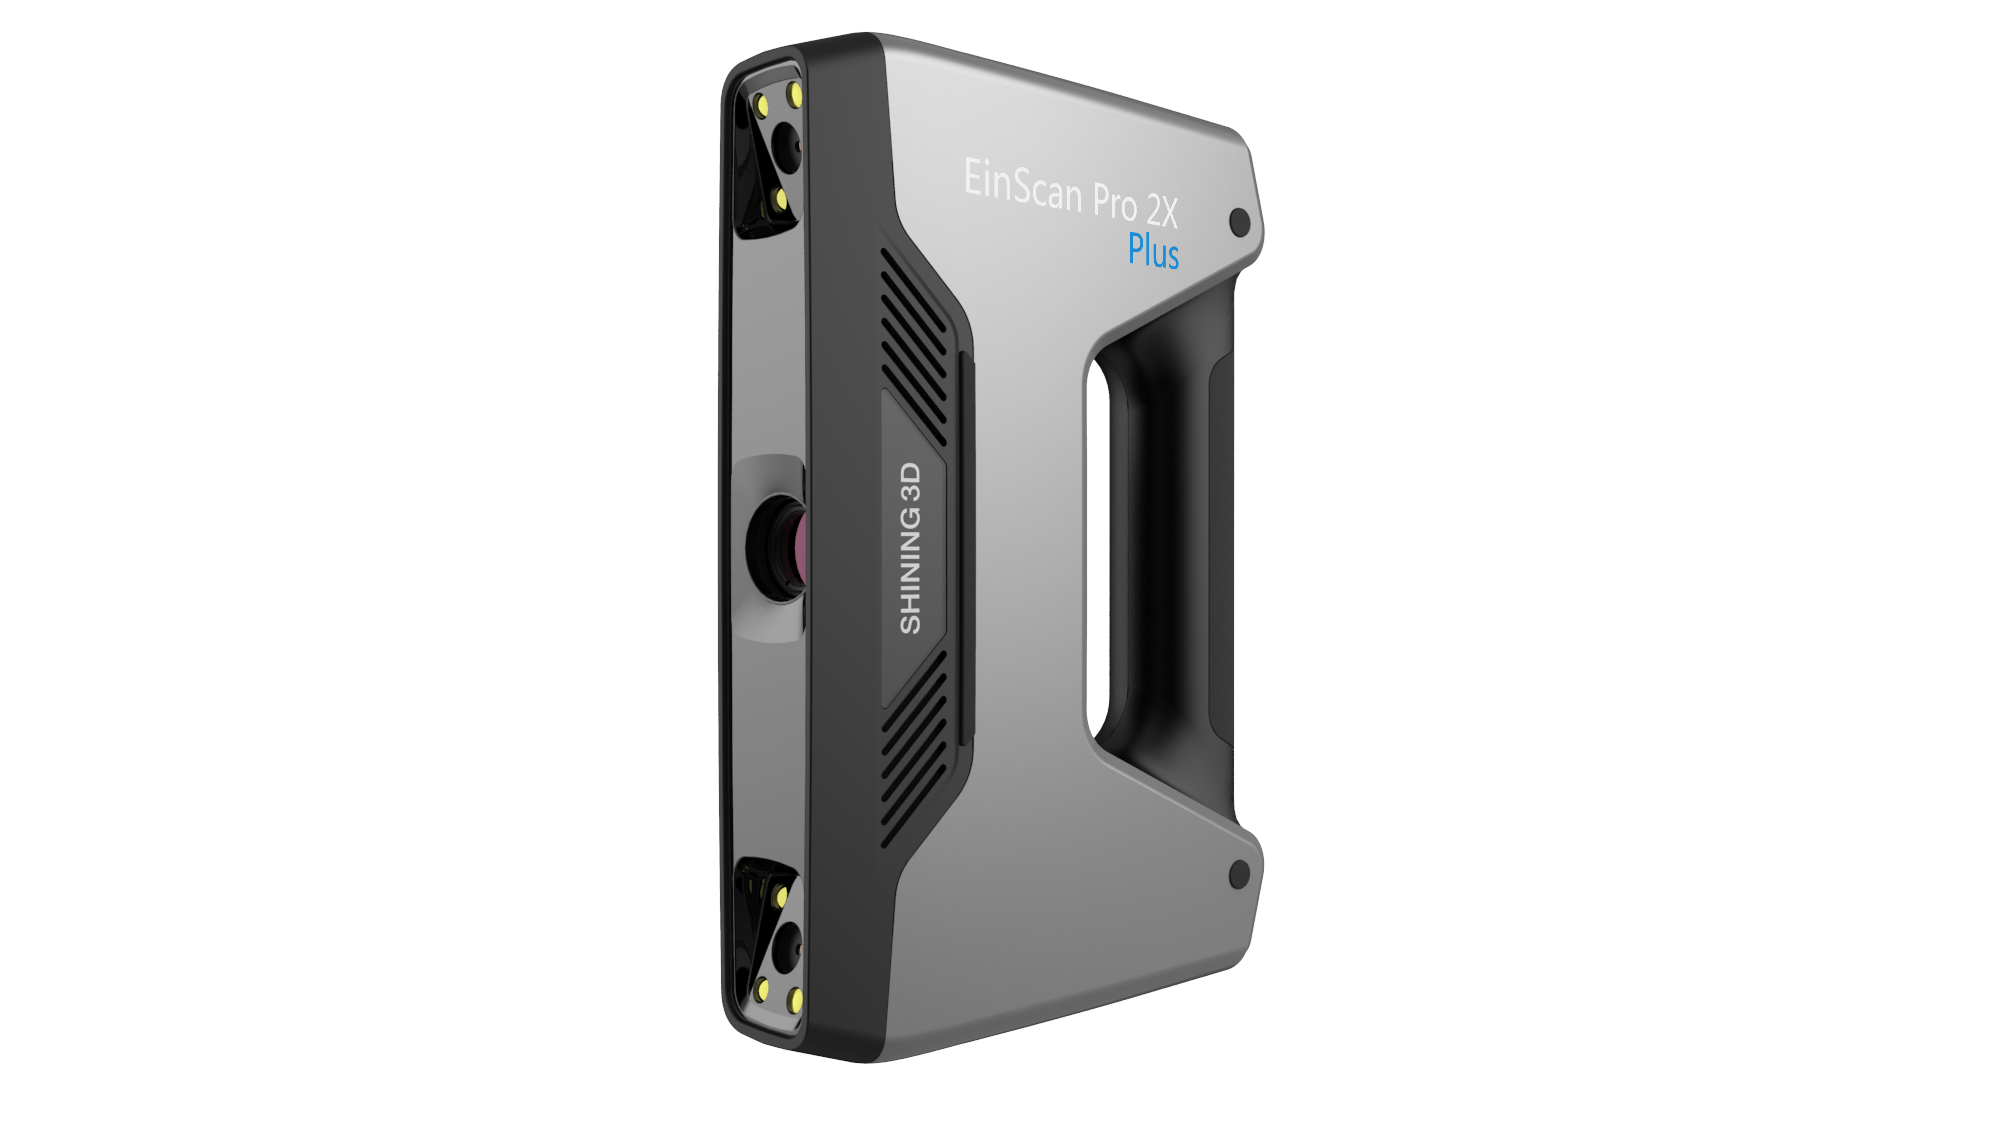 Ручной 3D сканер EinScan Pro 2X Plus